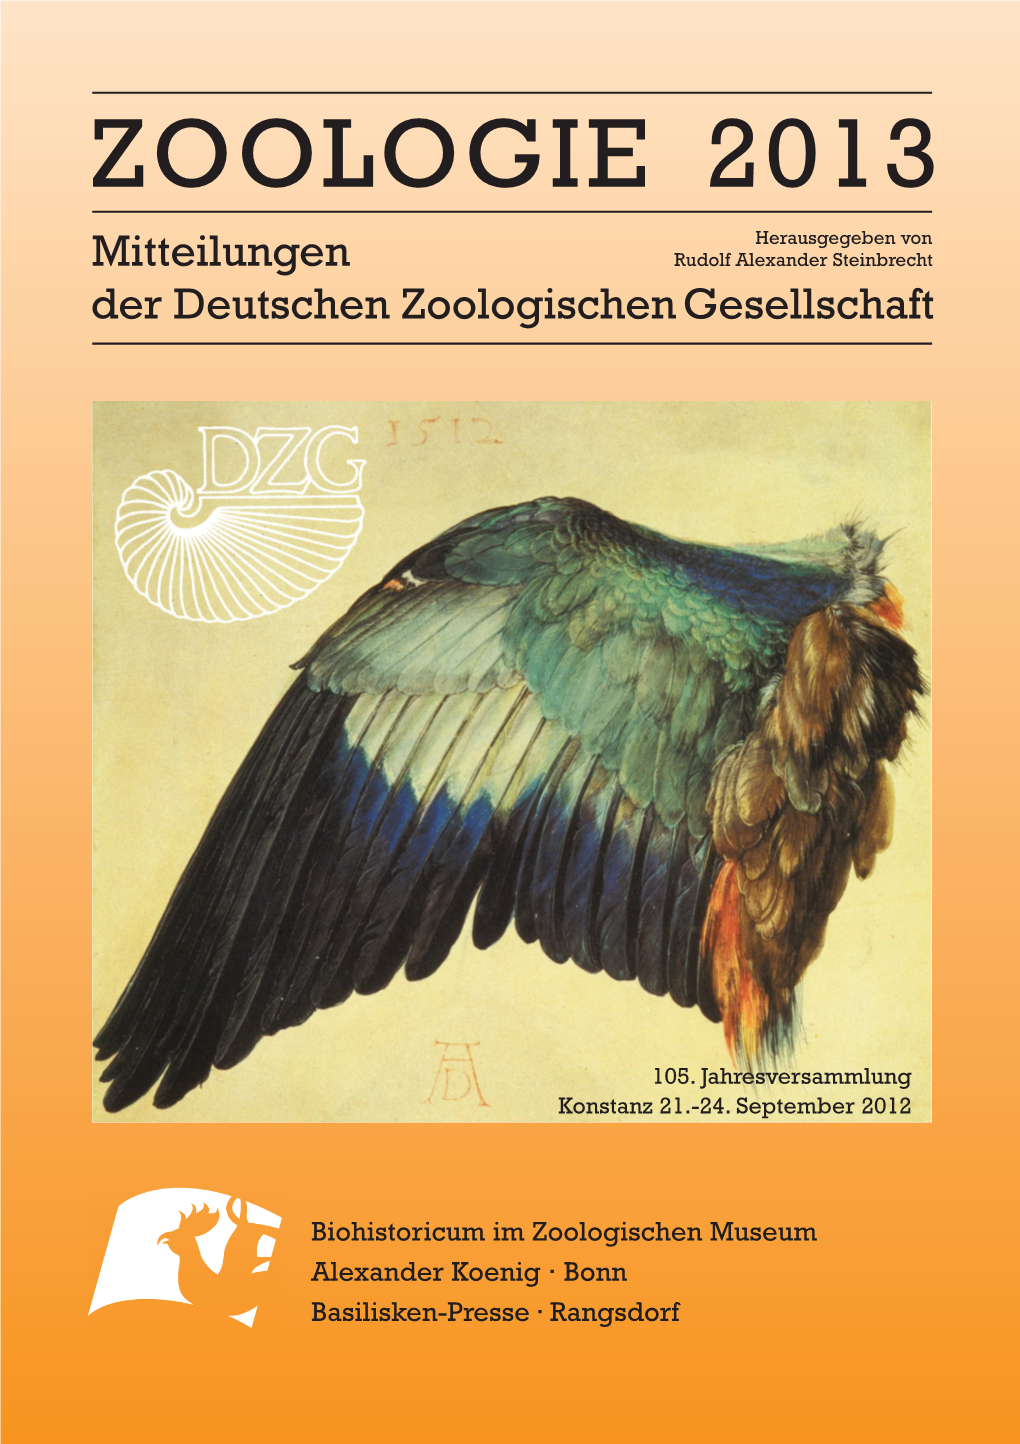 ZOOLOGIE 2013 ZOOLOGIE 2013 Herausgegeben Von Mitteilungen Rudolf Alexander Steinbrecht Der Deutschen Zoologischen Gesellschaft